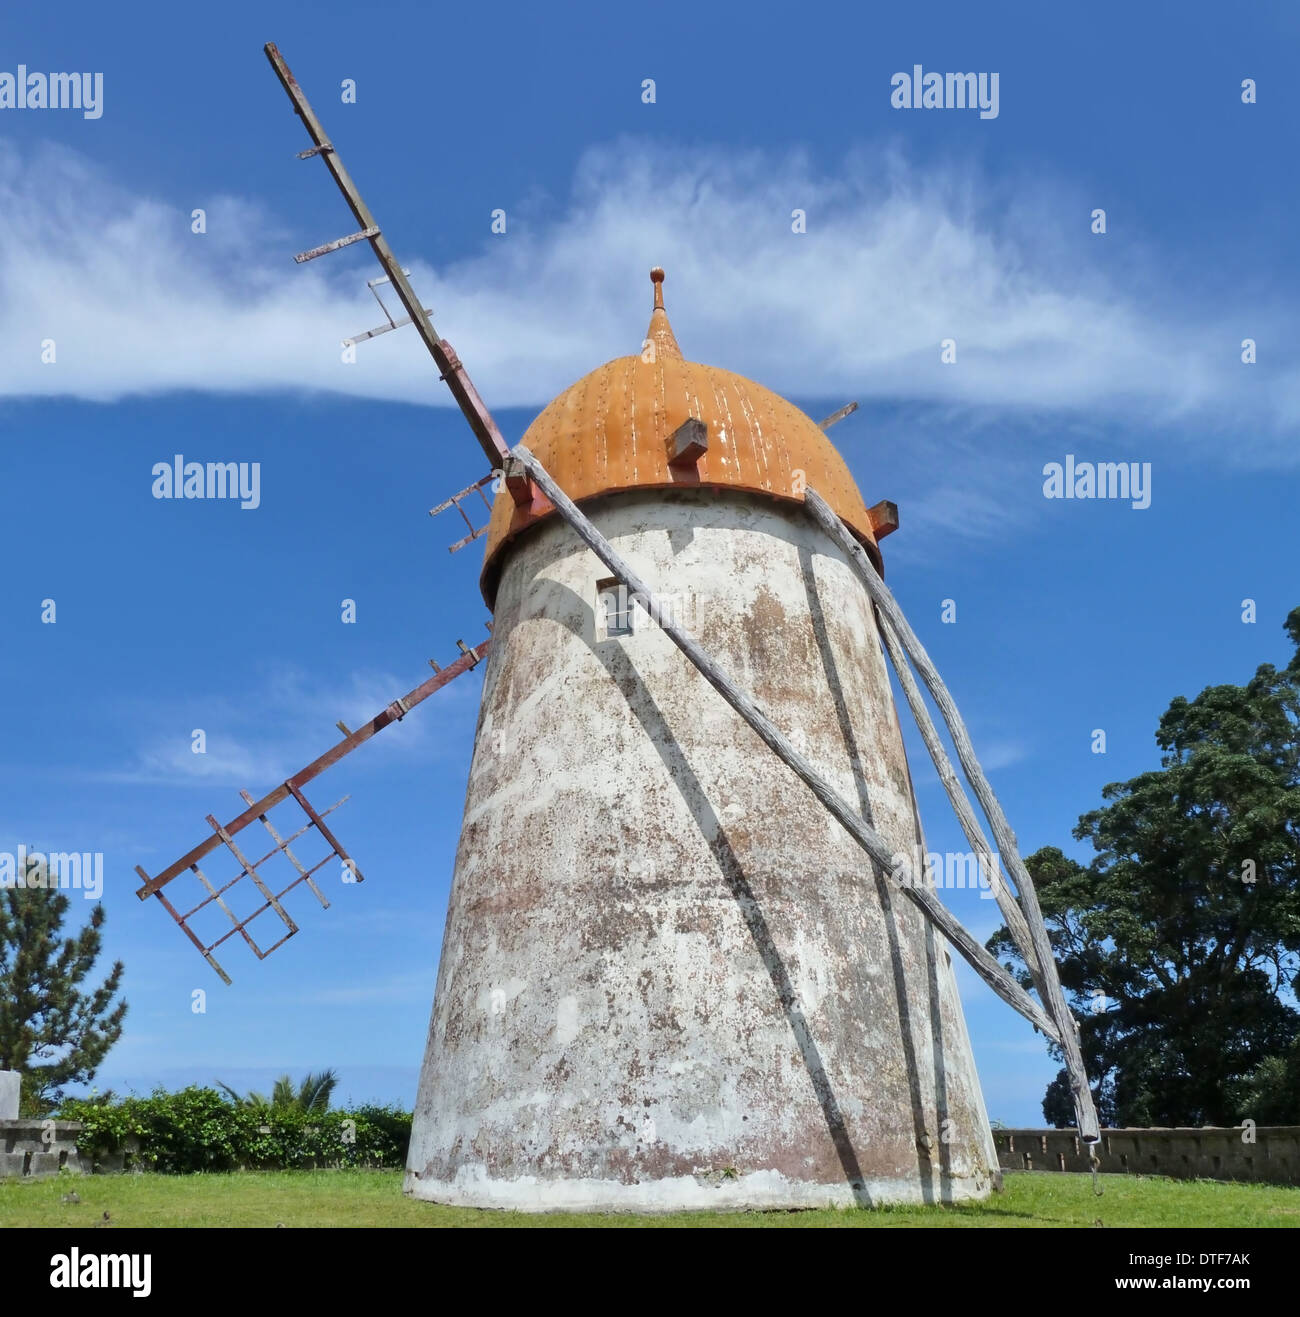 traditionelle Windmühle auf der Insel São Miguel, der größten Insel des Azoren-Archipels, Wich ist eine Gruppe von vulkanischen Inseln Loc Stockfoto